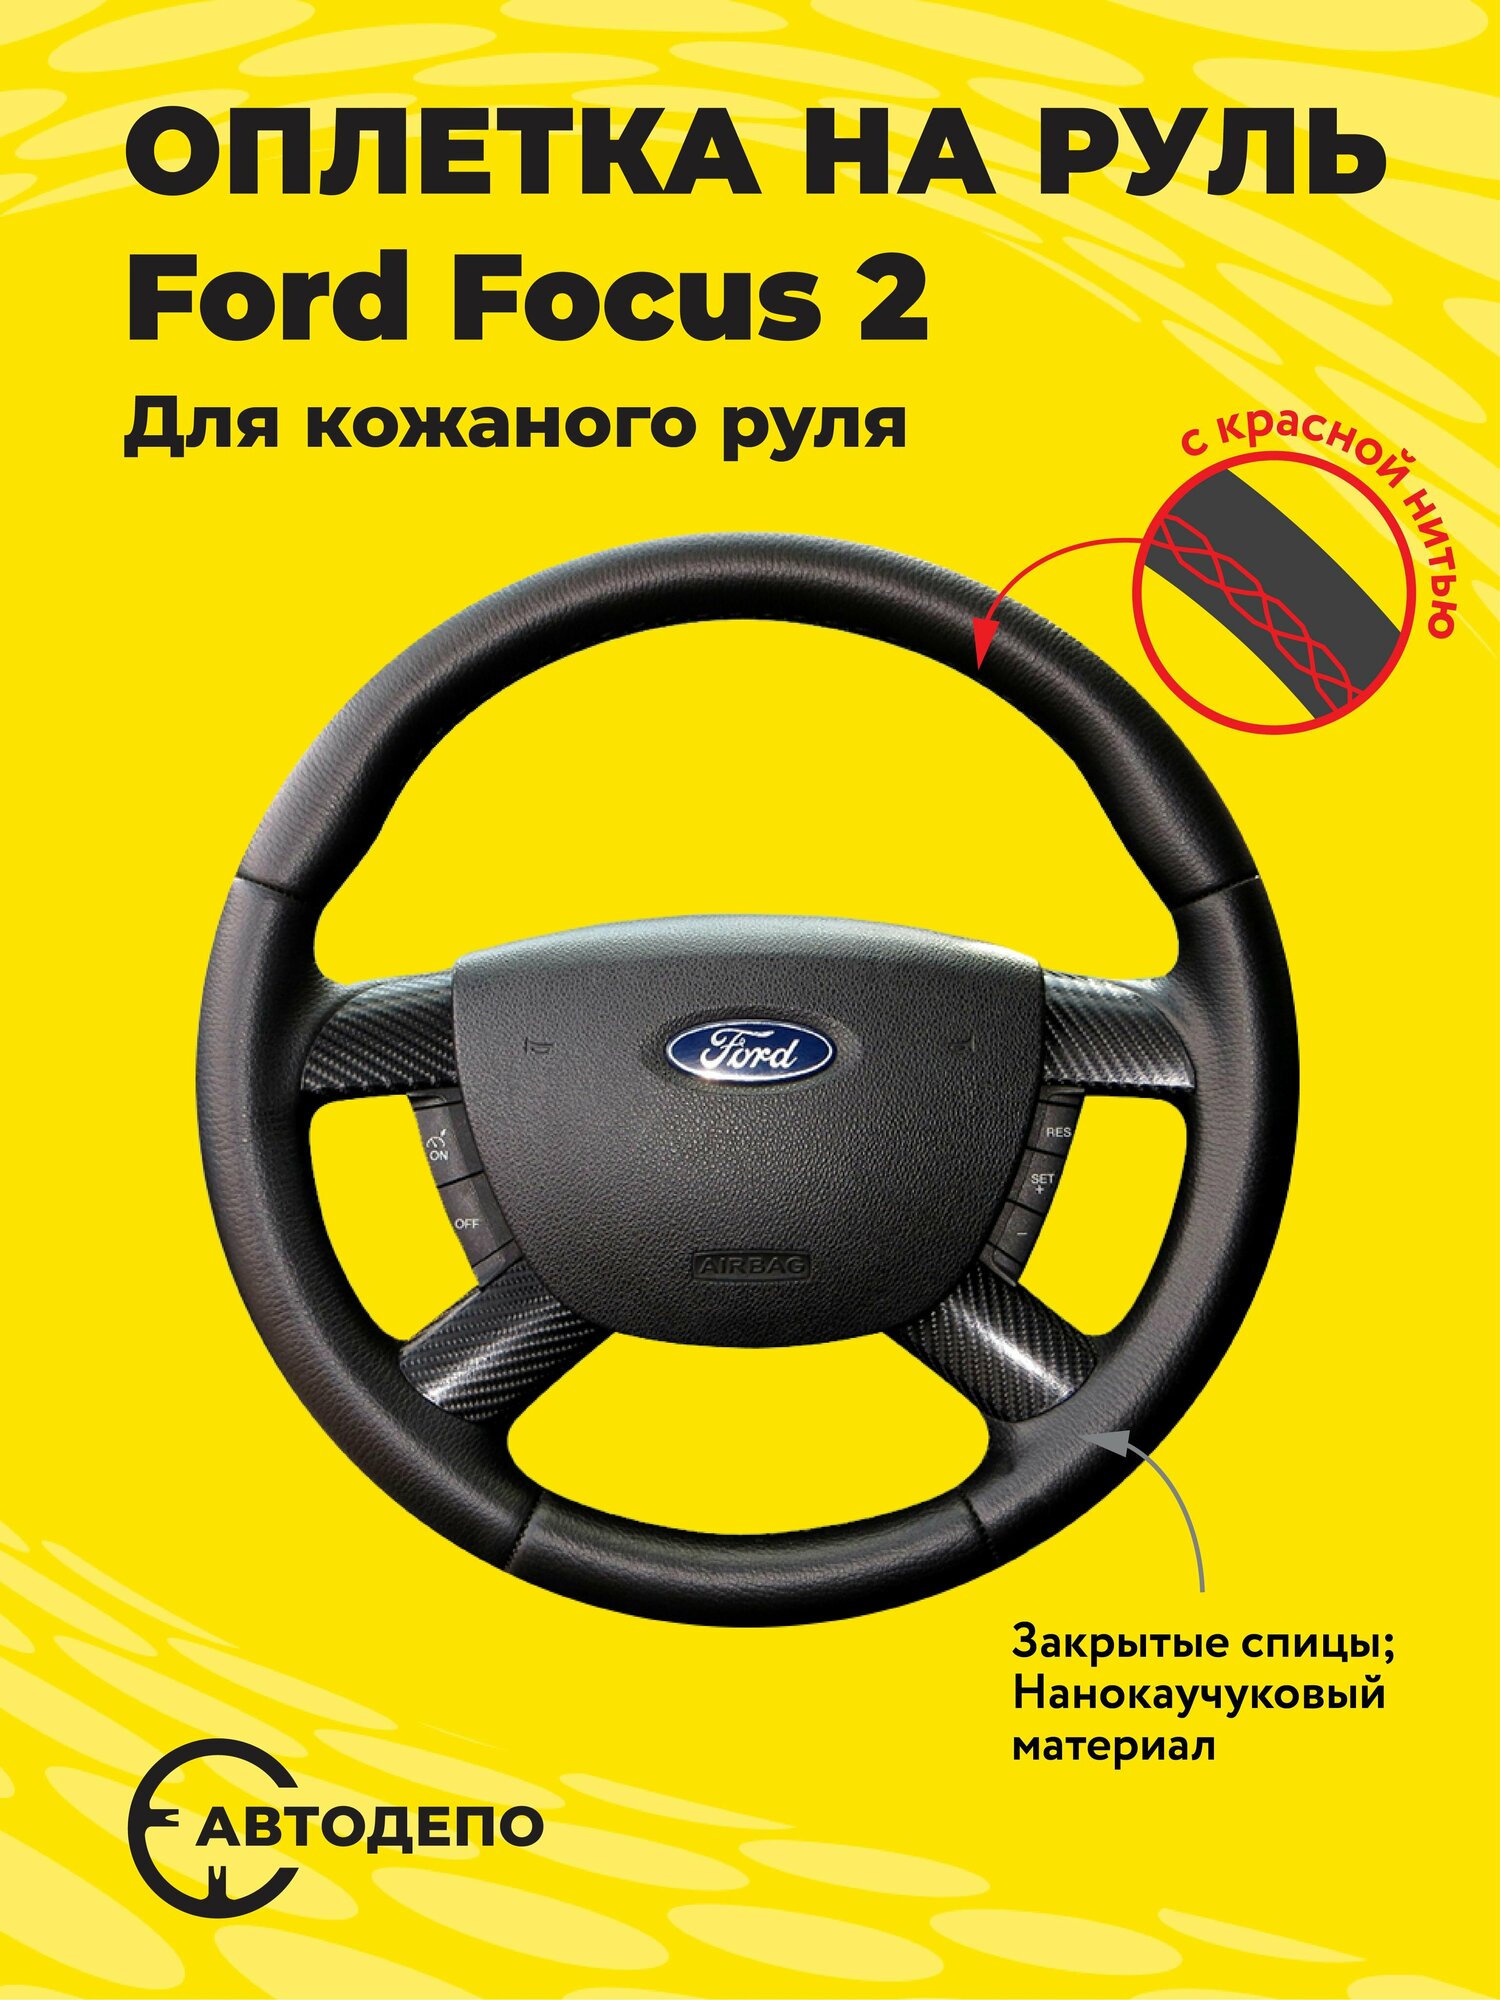 Оплетка на руль Ford Focus 2 для кожаного руля, черная кожа с красным швом.